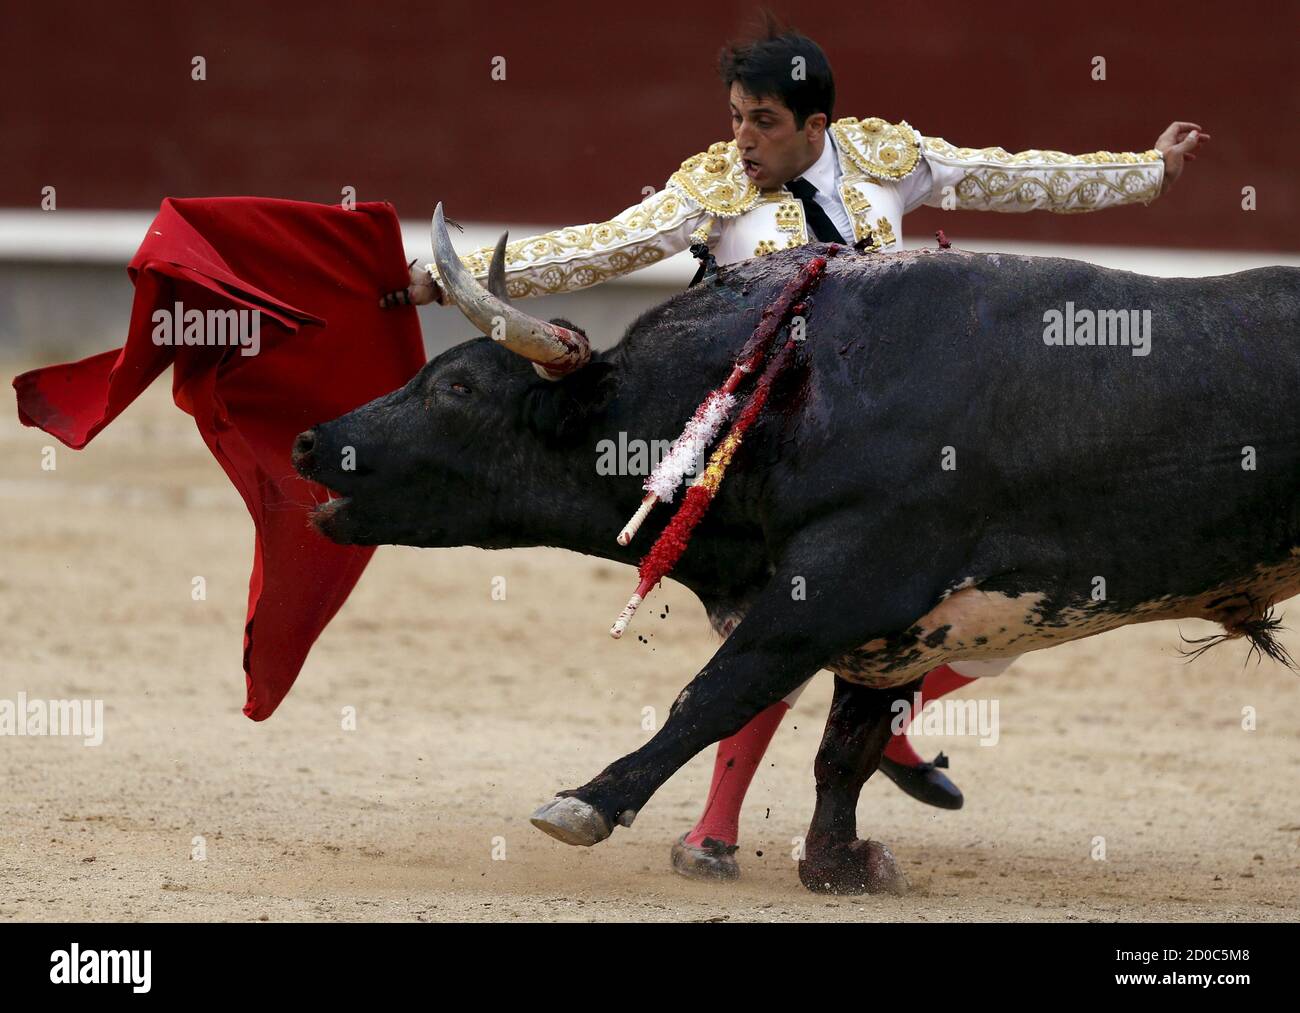 El matador español Javier Castano realiza un pase en un toro durante una  corrida de toros en la plaza de toros Ventas en Madrid el 7 de junio de 2015.  REUTERS/Javier Barbancho